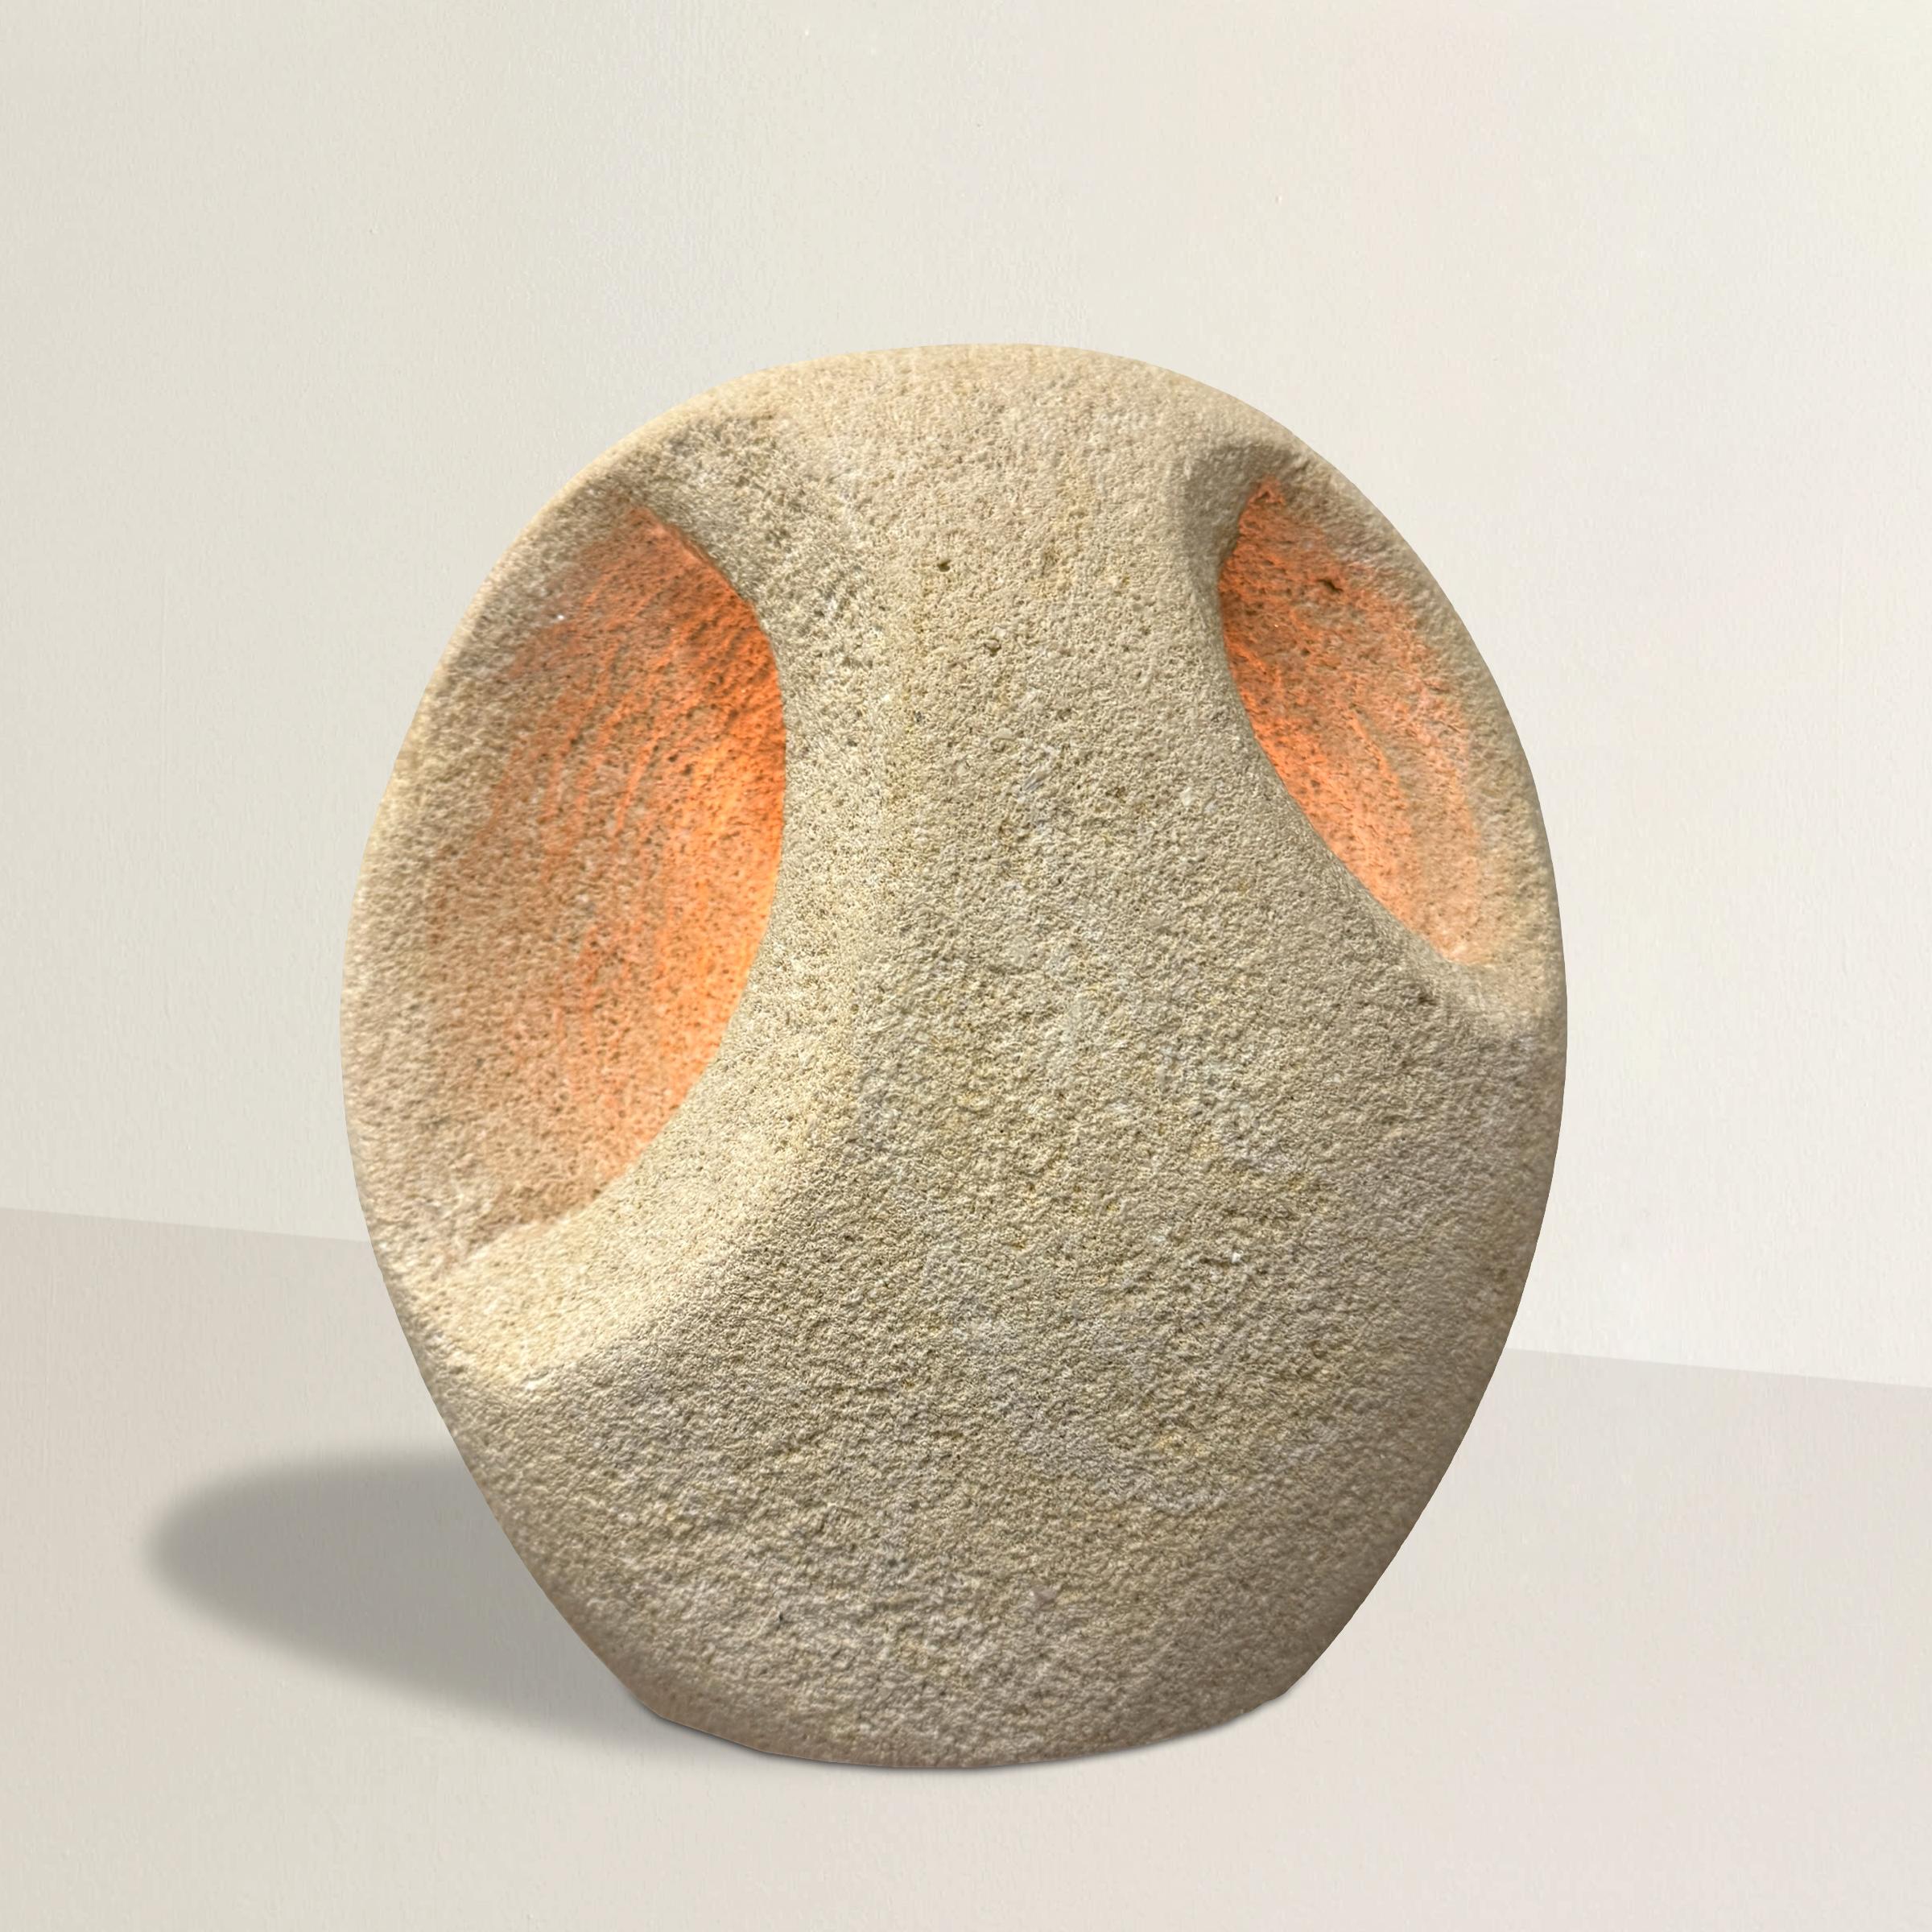 Diese vom französischen Modernismus des späten 20. Jahrhunderts inspirierte Tischlampe aus geschnitztem Kalkstein ist eine beeindruckende Mischung aus Form und Funktion. Die eiförmige Form wird durch zwei ovale Aussparungen auf der Vorderseite